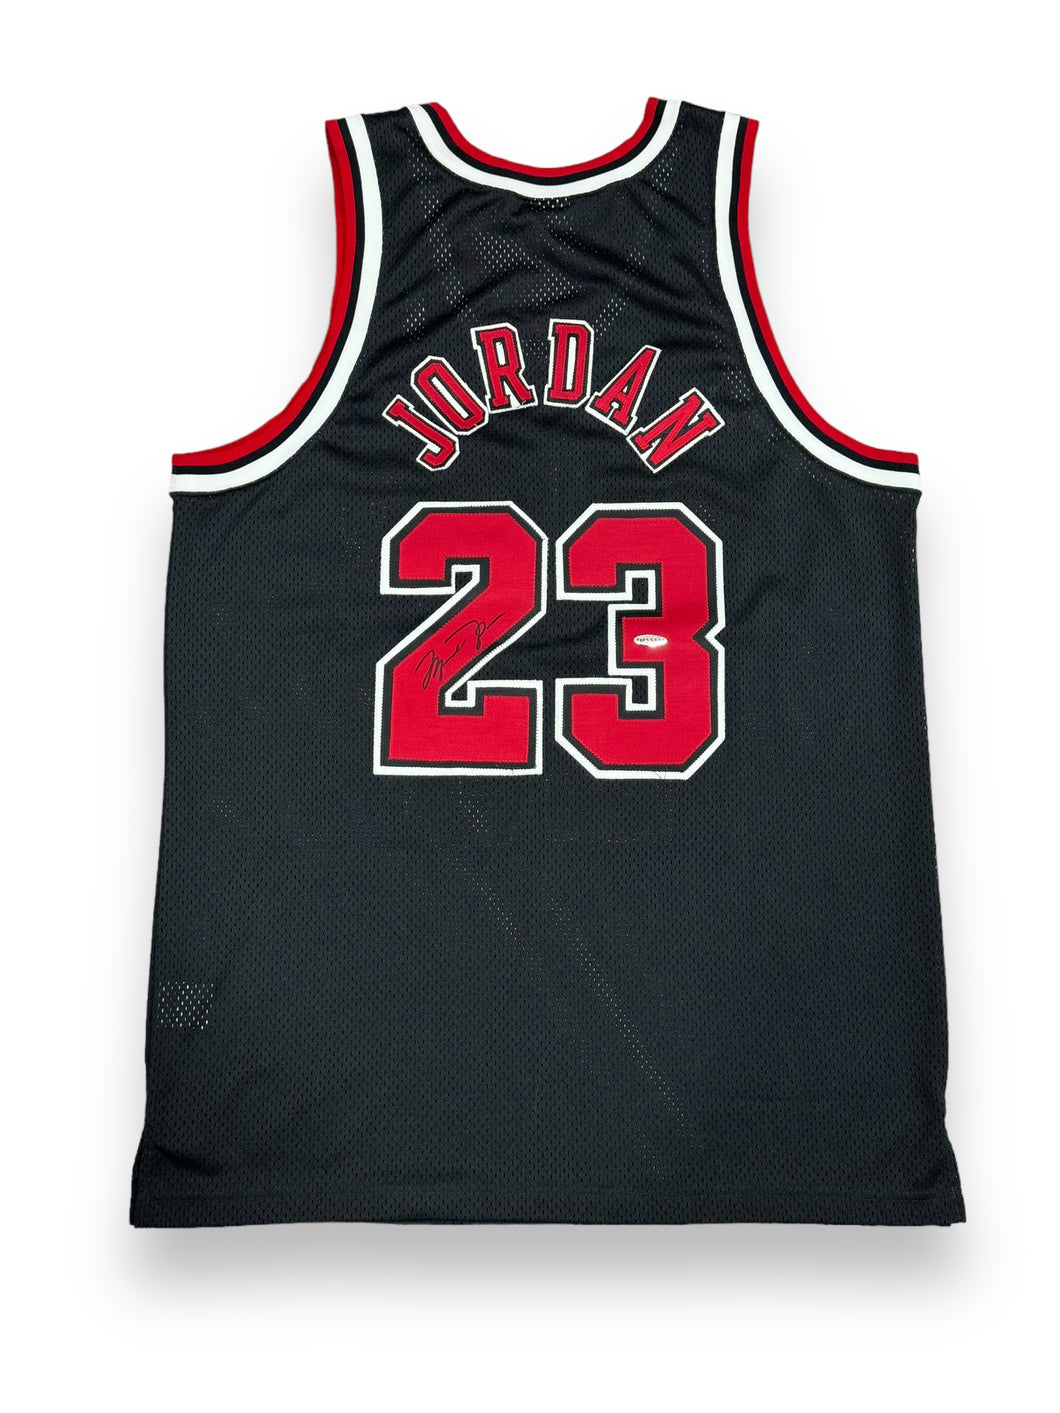 Jersey / Bulls / Michael Jordan